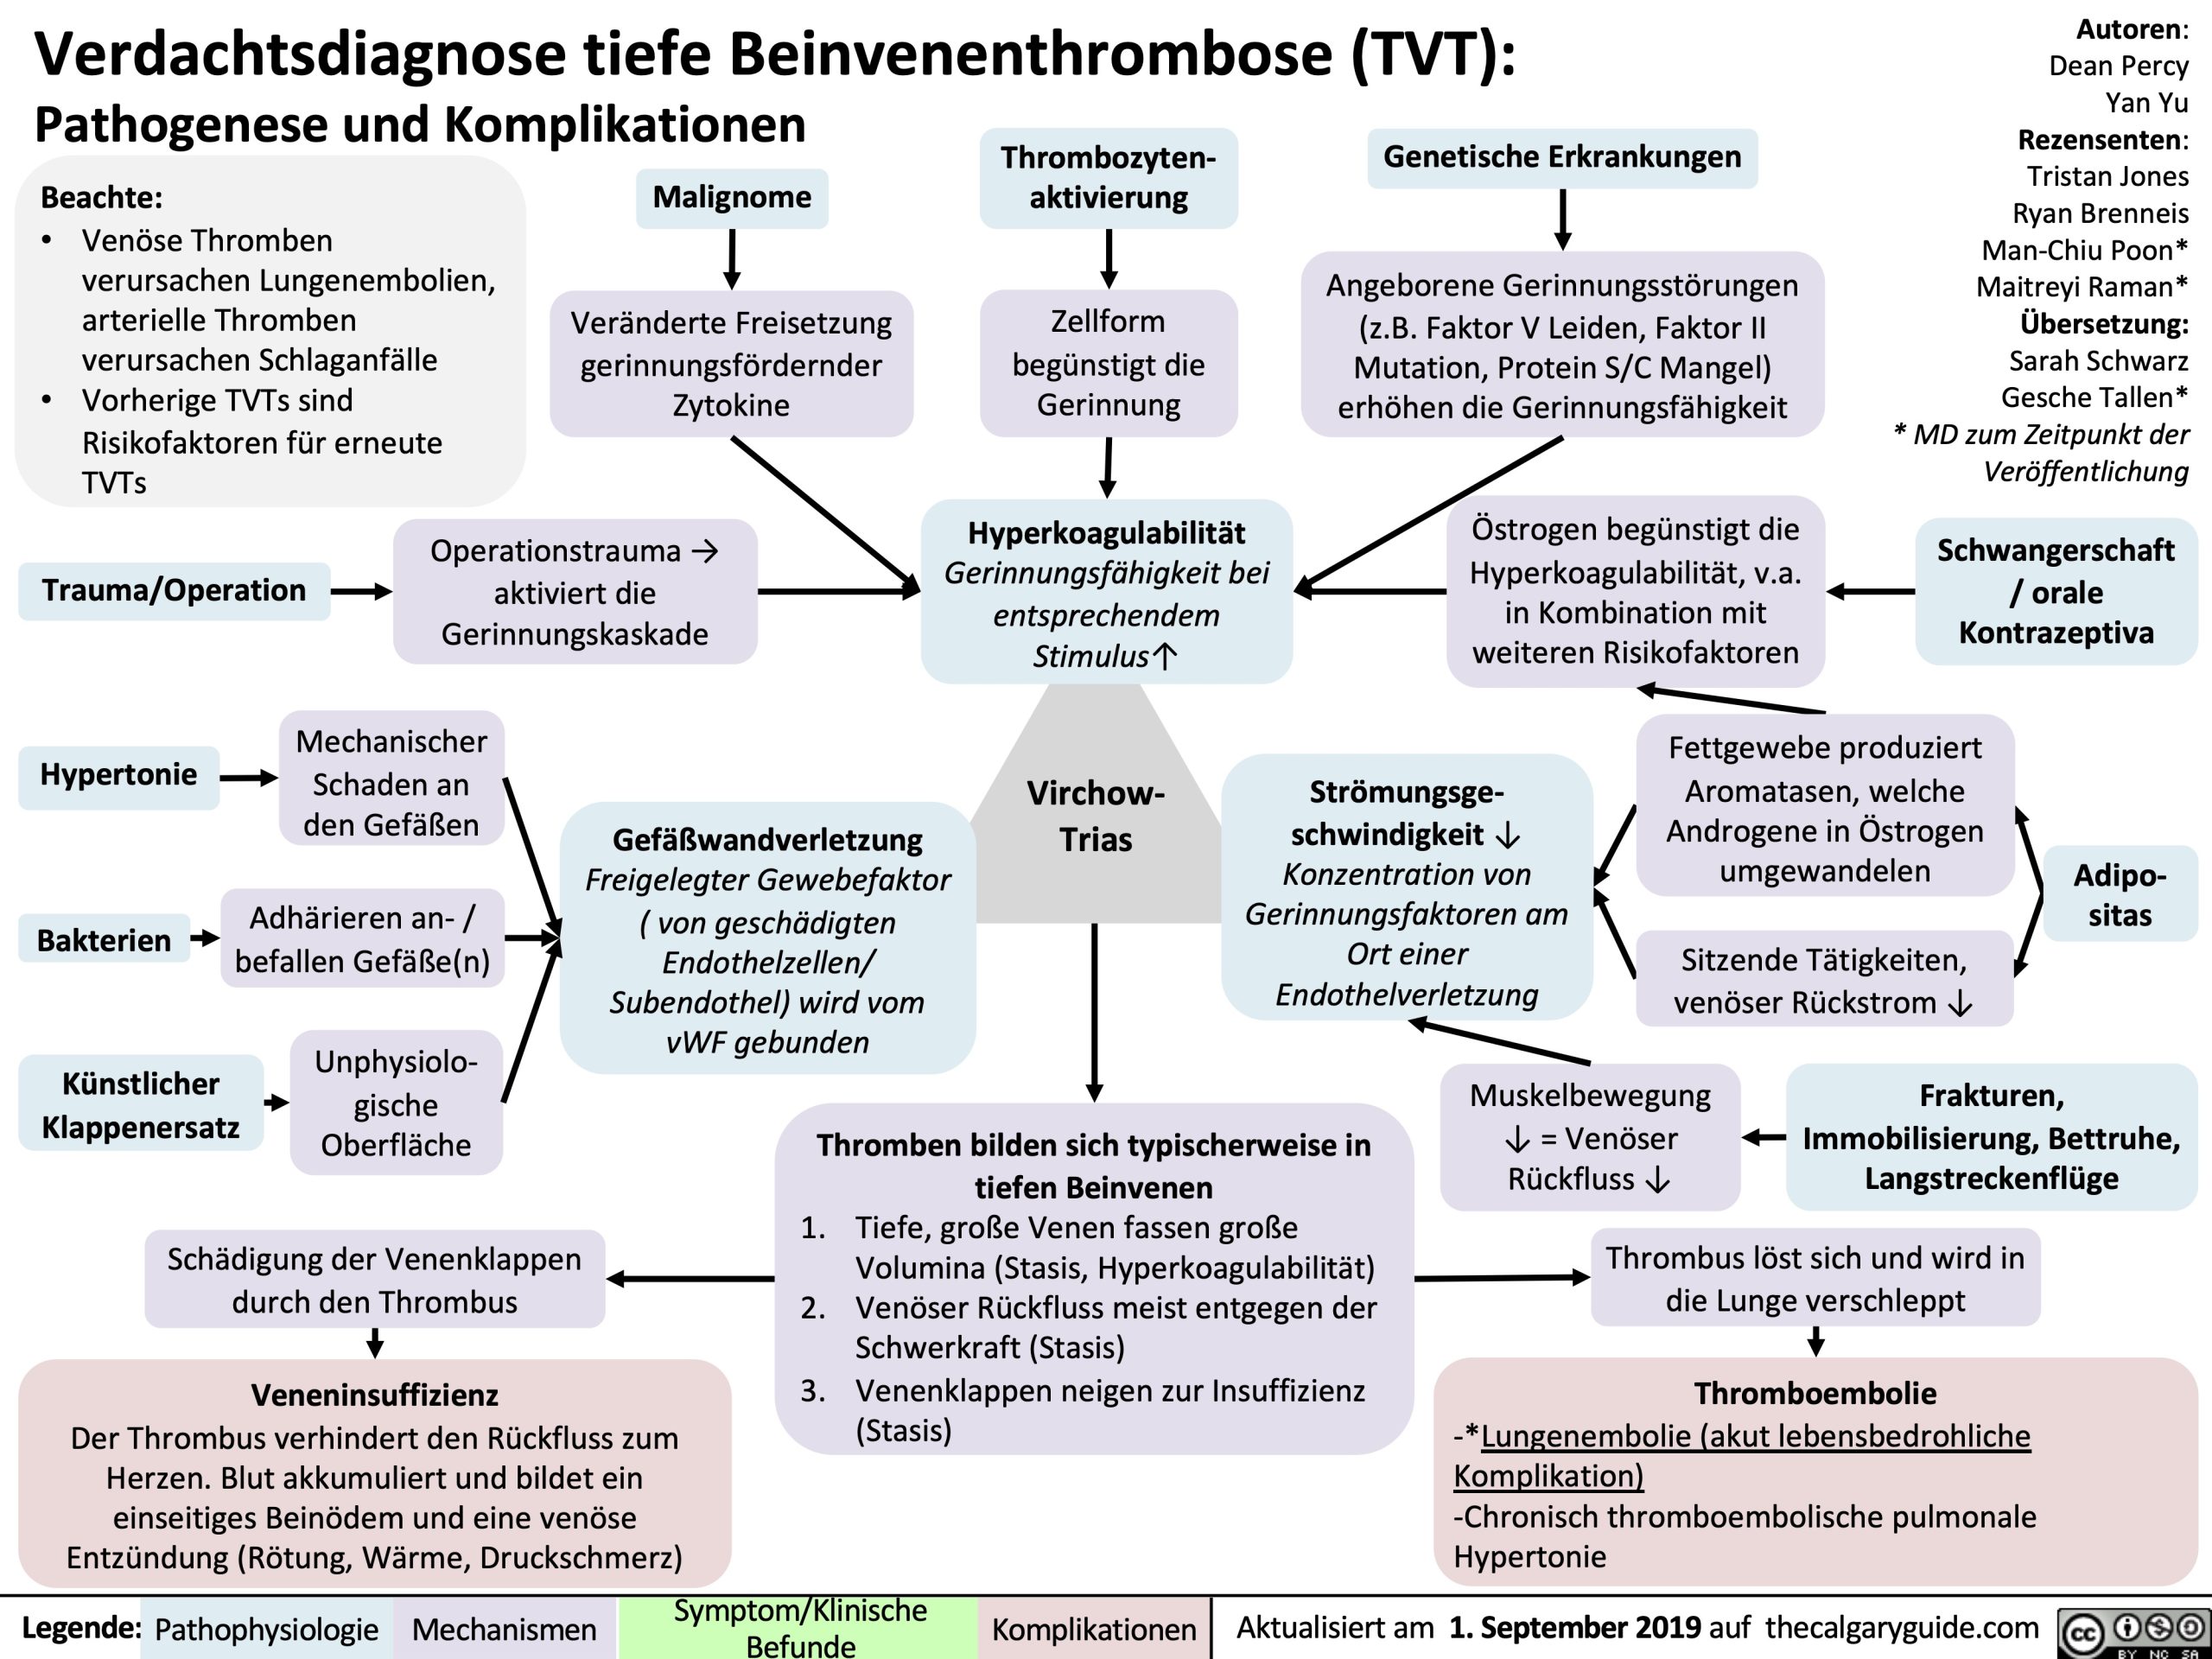 Verdachtsdiagnose tiefe Beinvenenthrombose (TVT): Pathogenese und Komplikationen